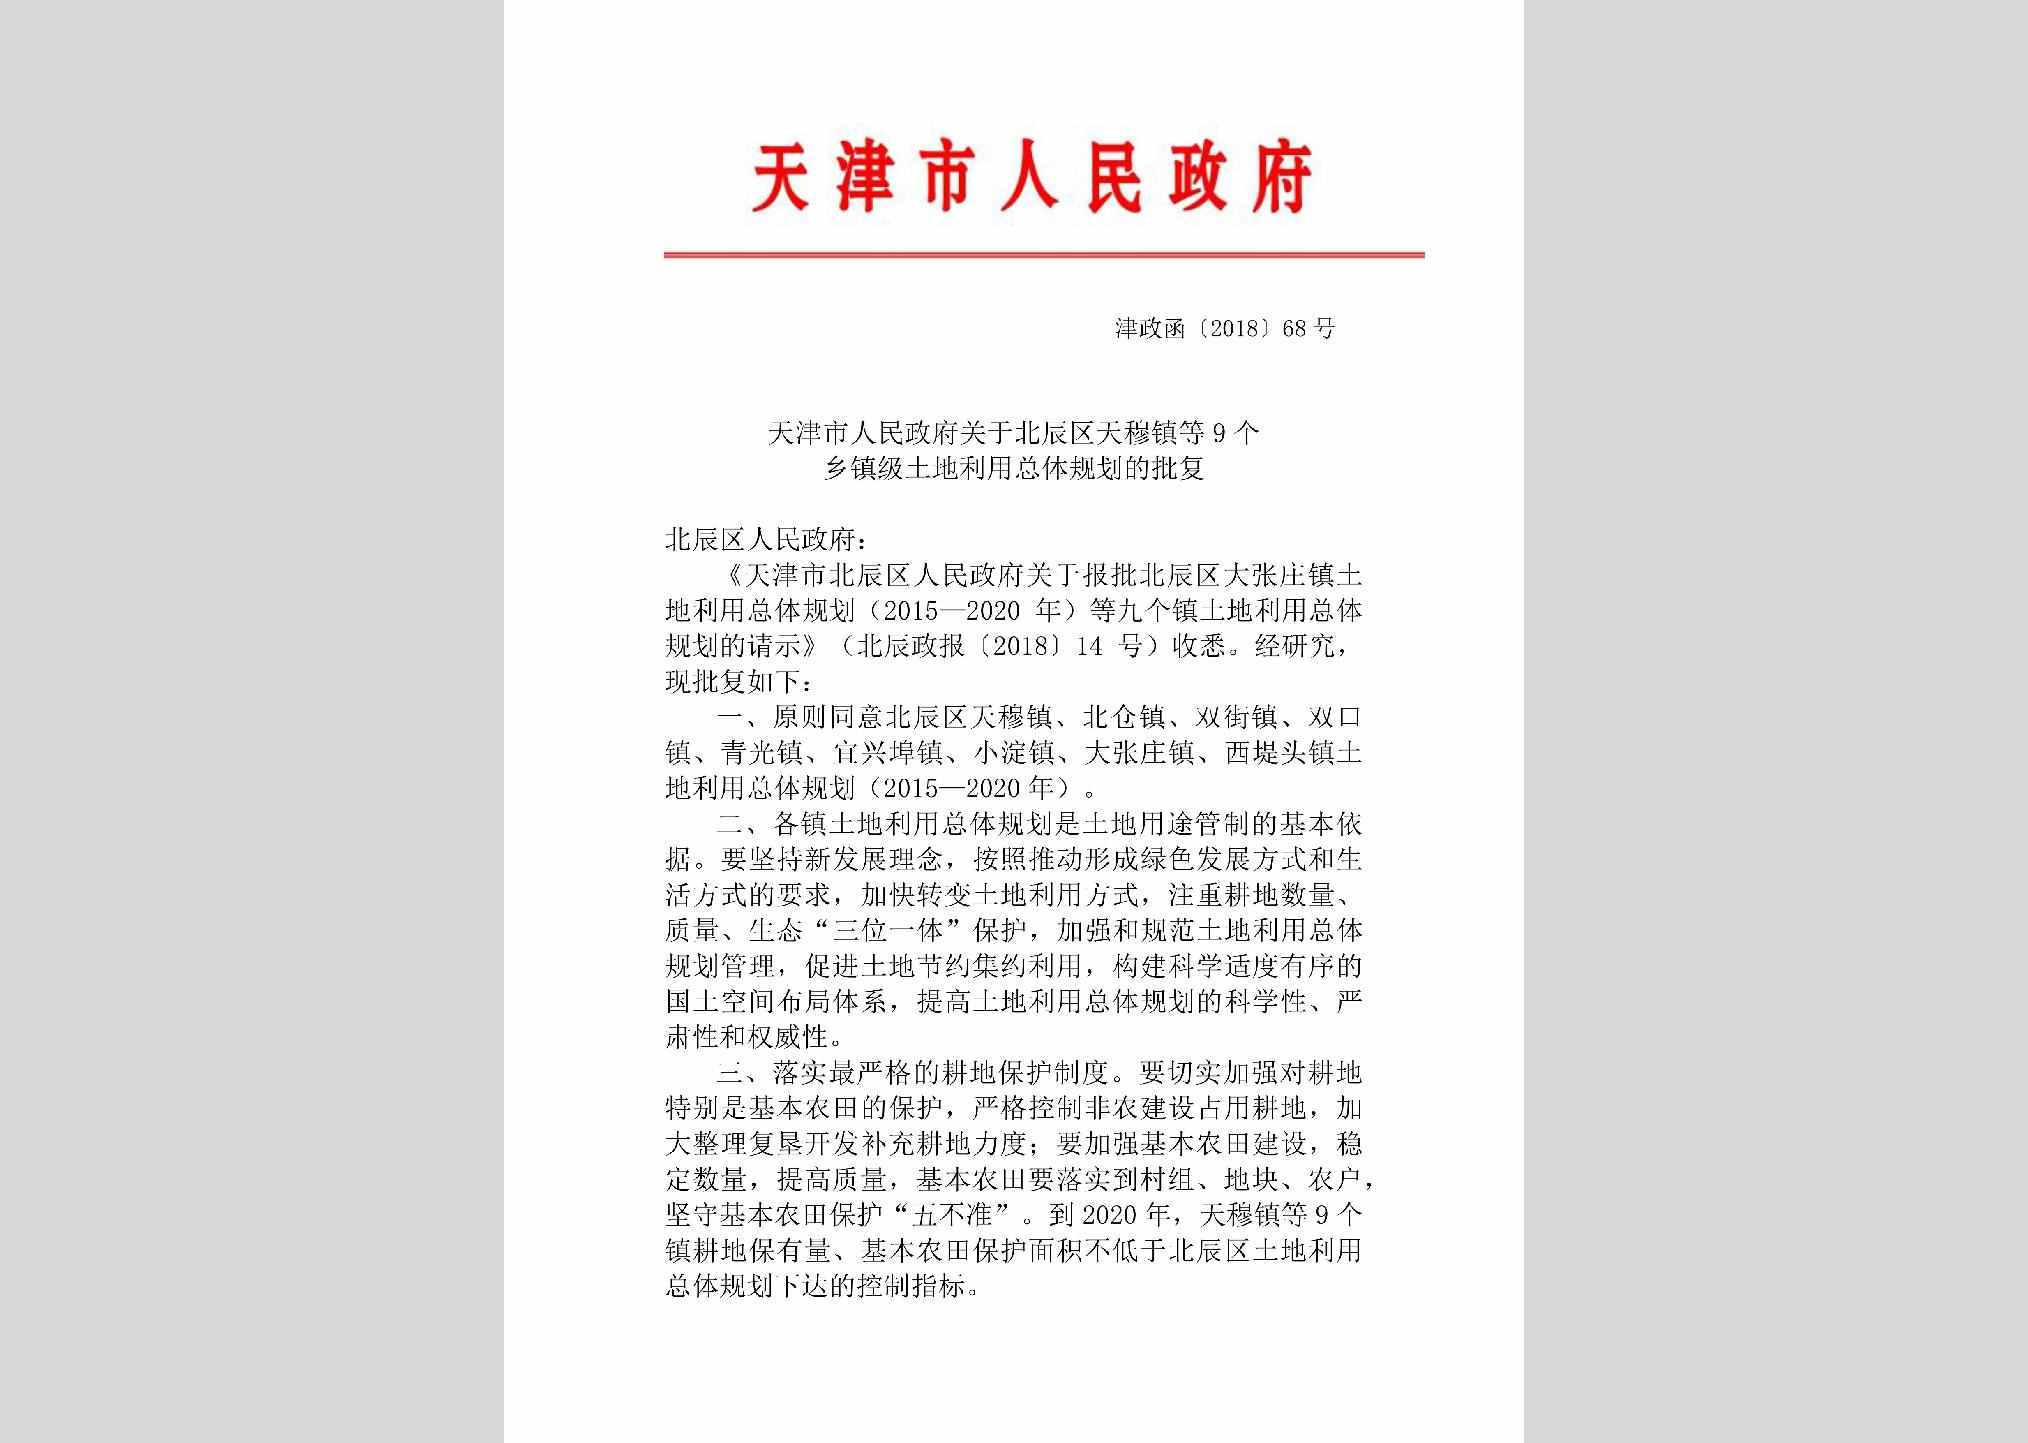 津政函[2018]68号：天津市人民政府关于北辰区天穆镇等9个乡镇级土地利用总体规划的批复